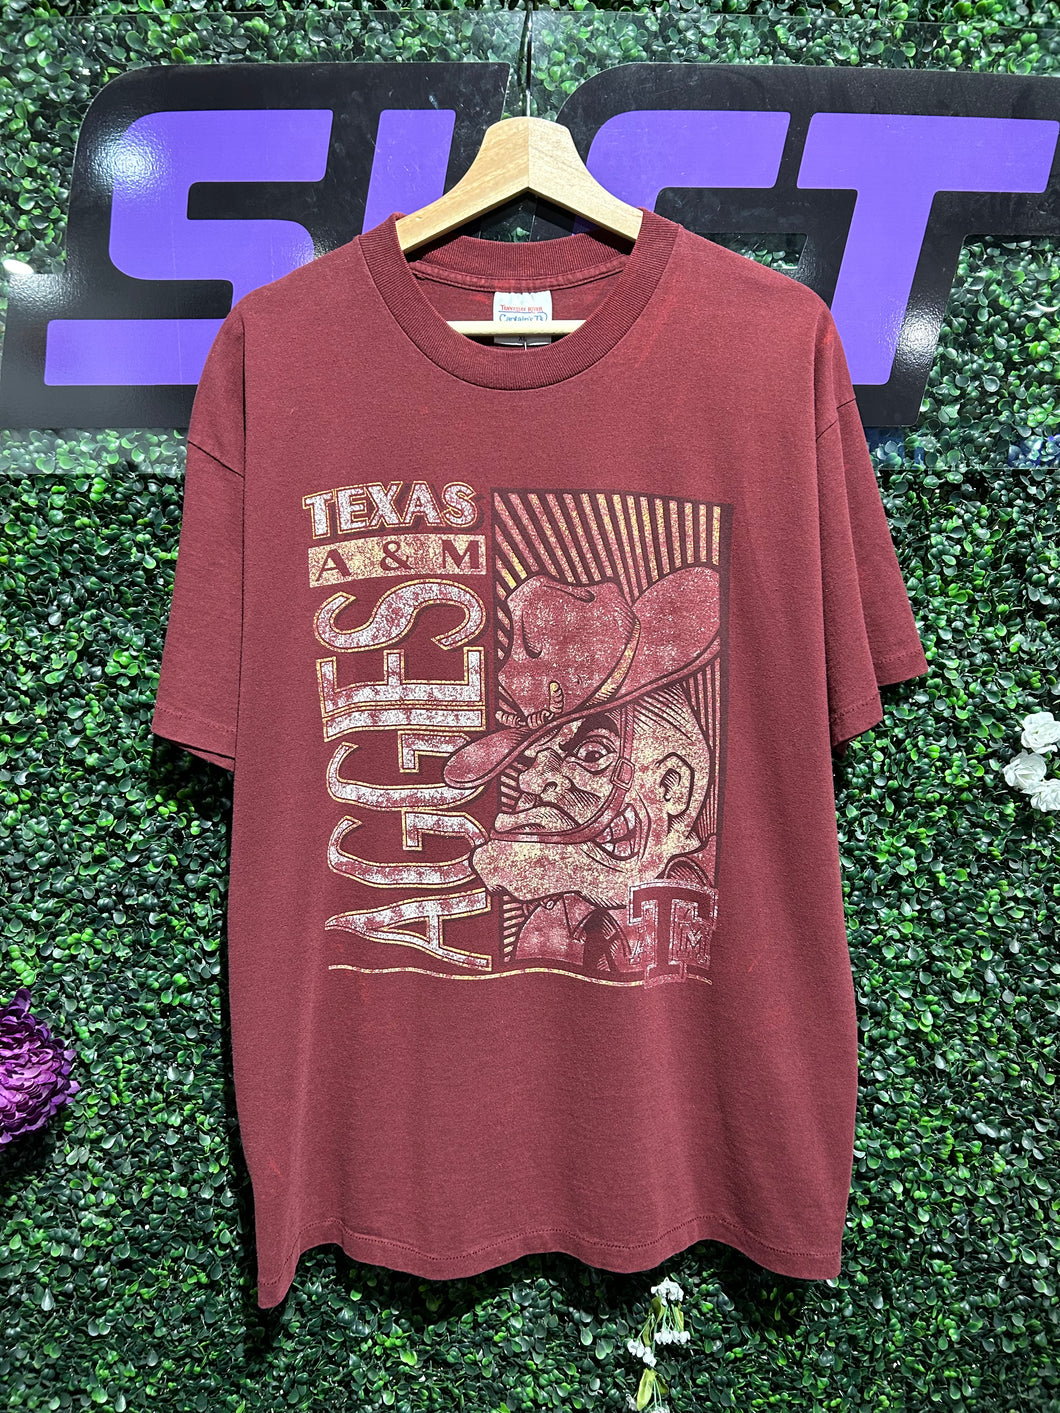 90s Texas A&M Aggies T-Shirt. Size XL